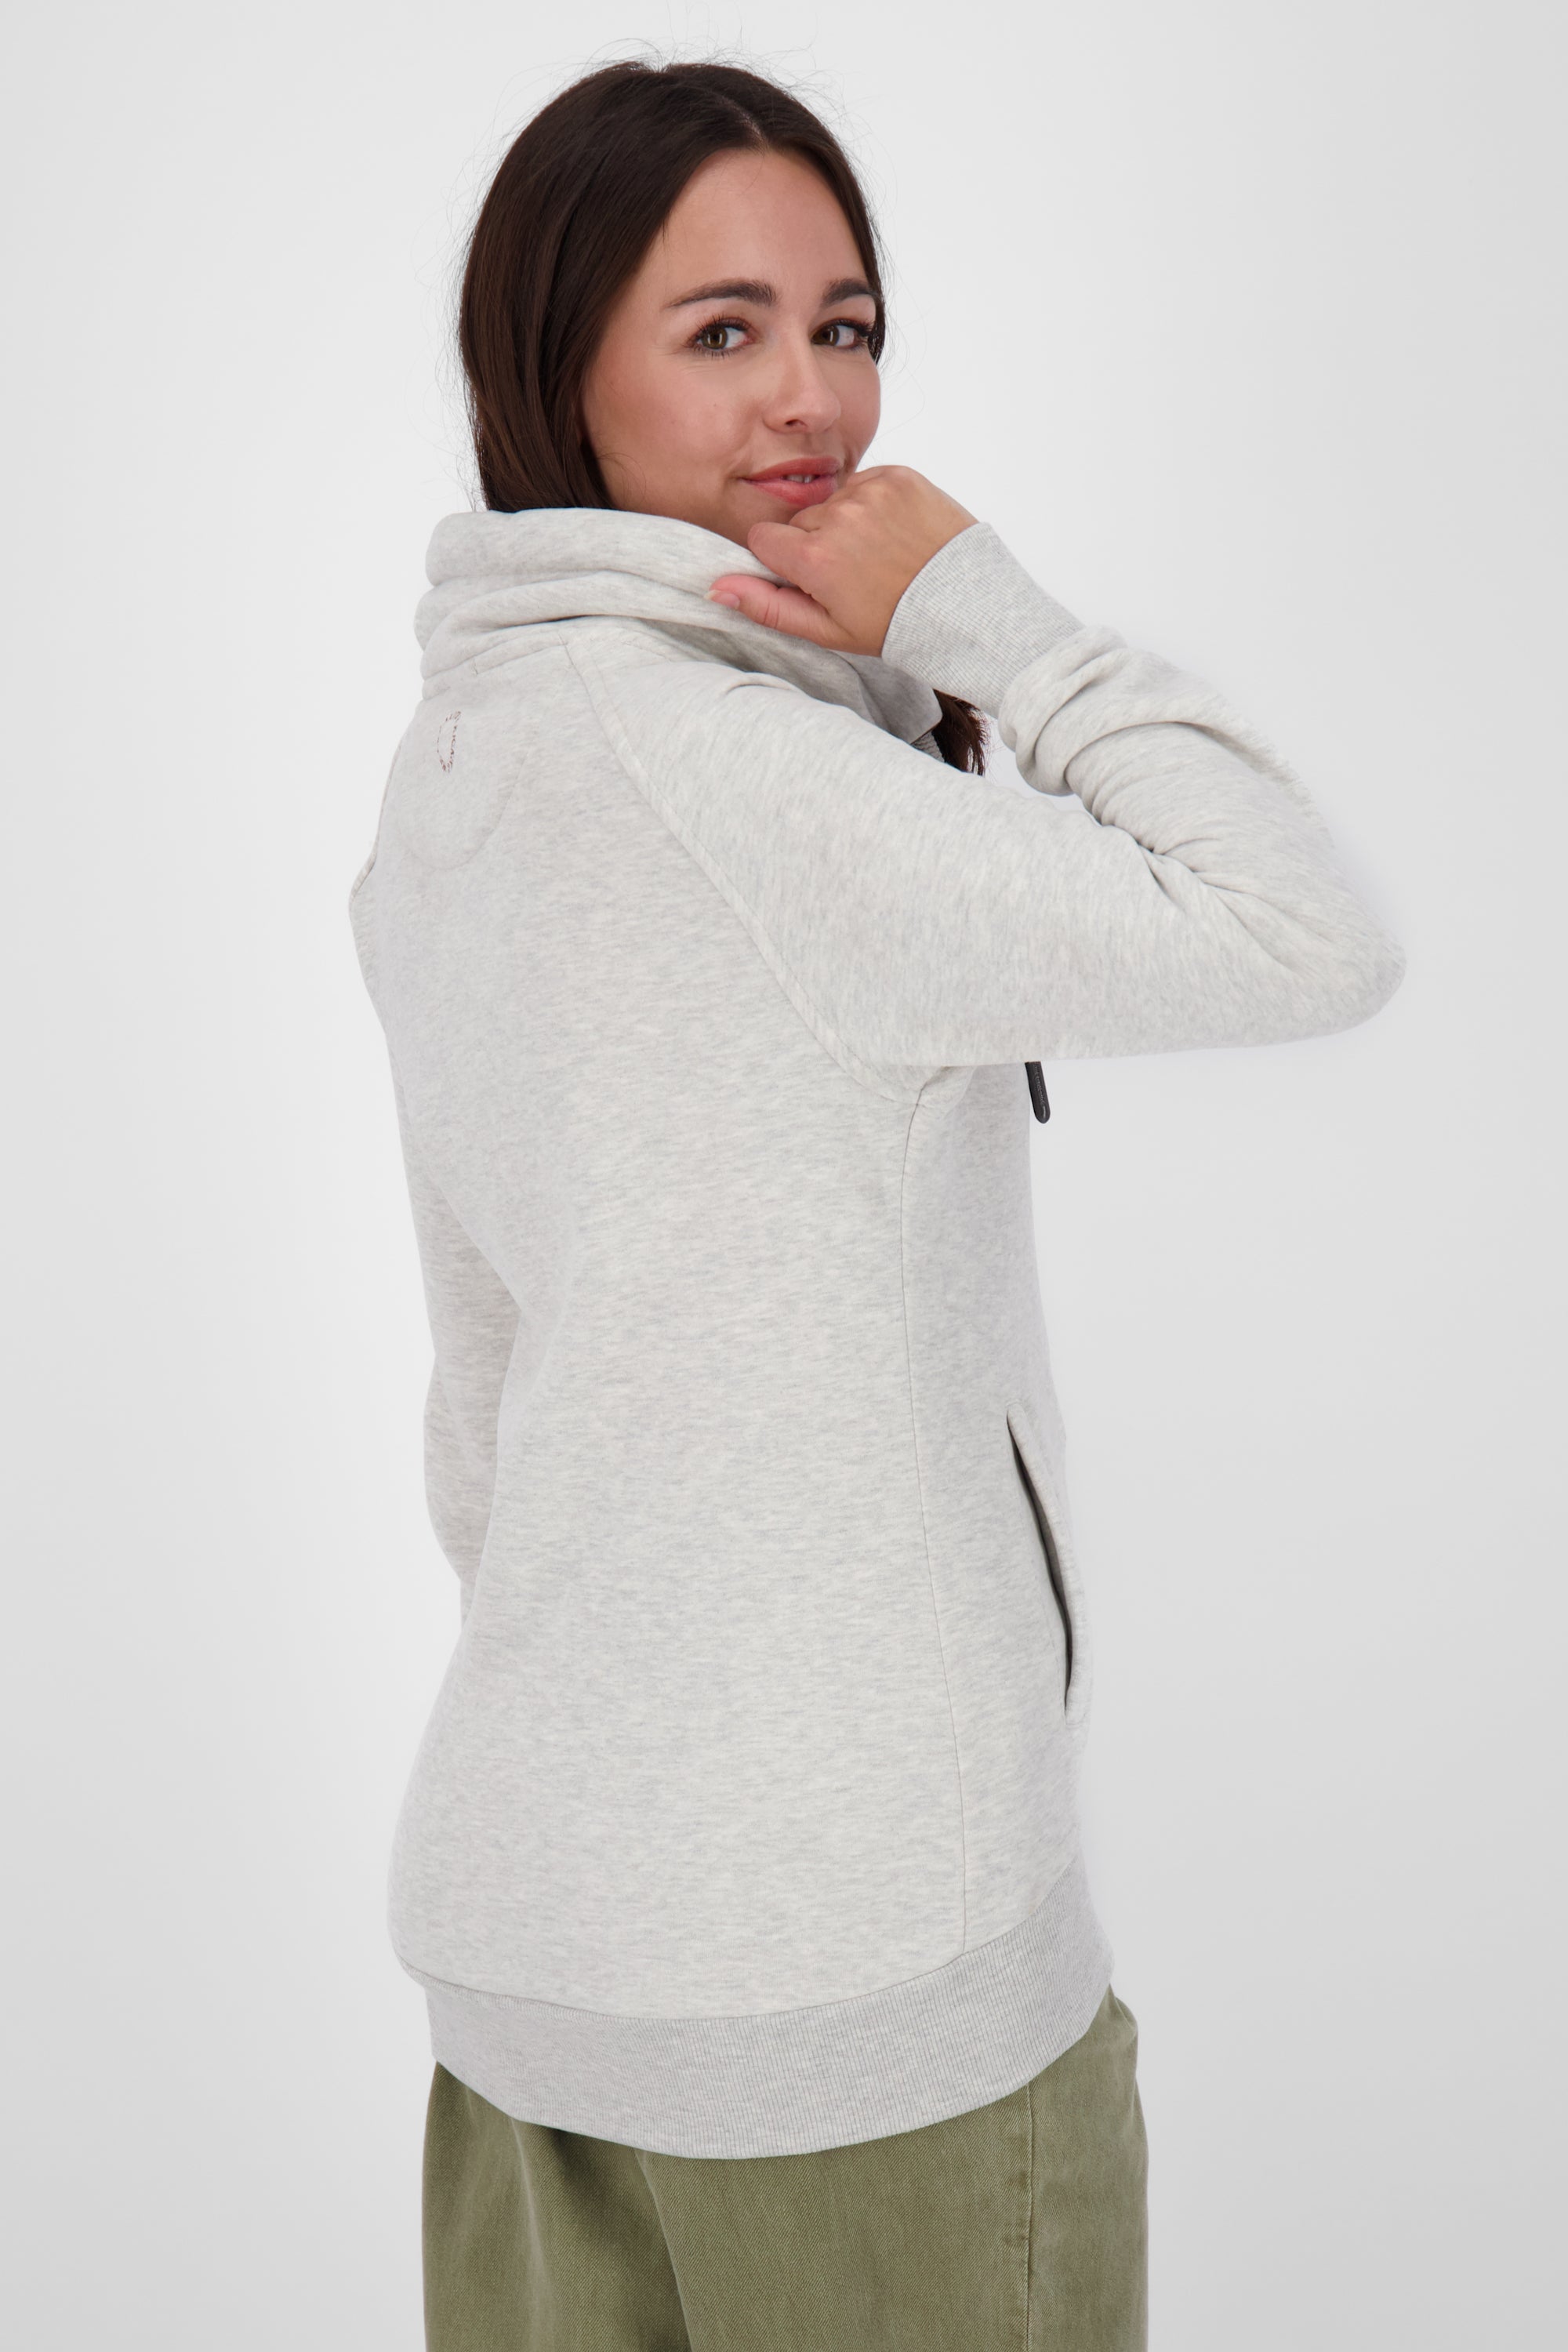 LimaAK A - Stilvolle Sweatjacke für Damen Grau